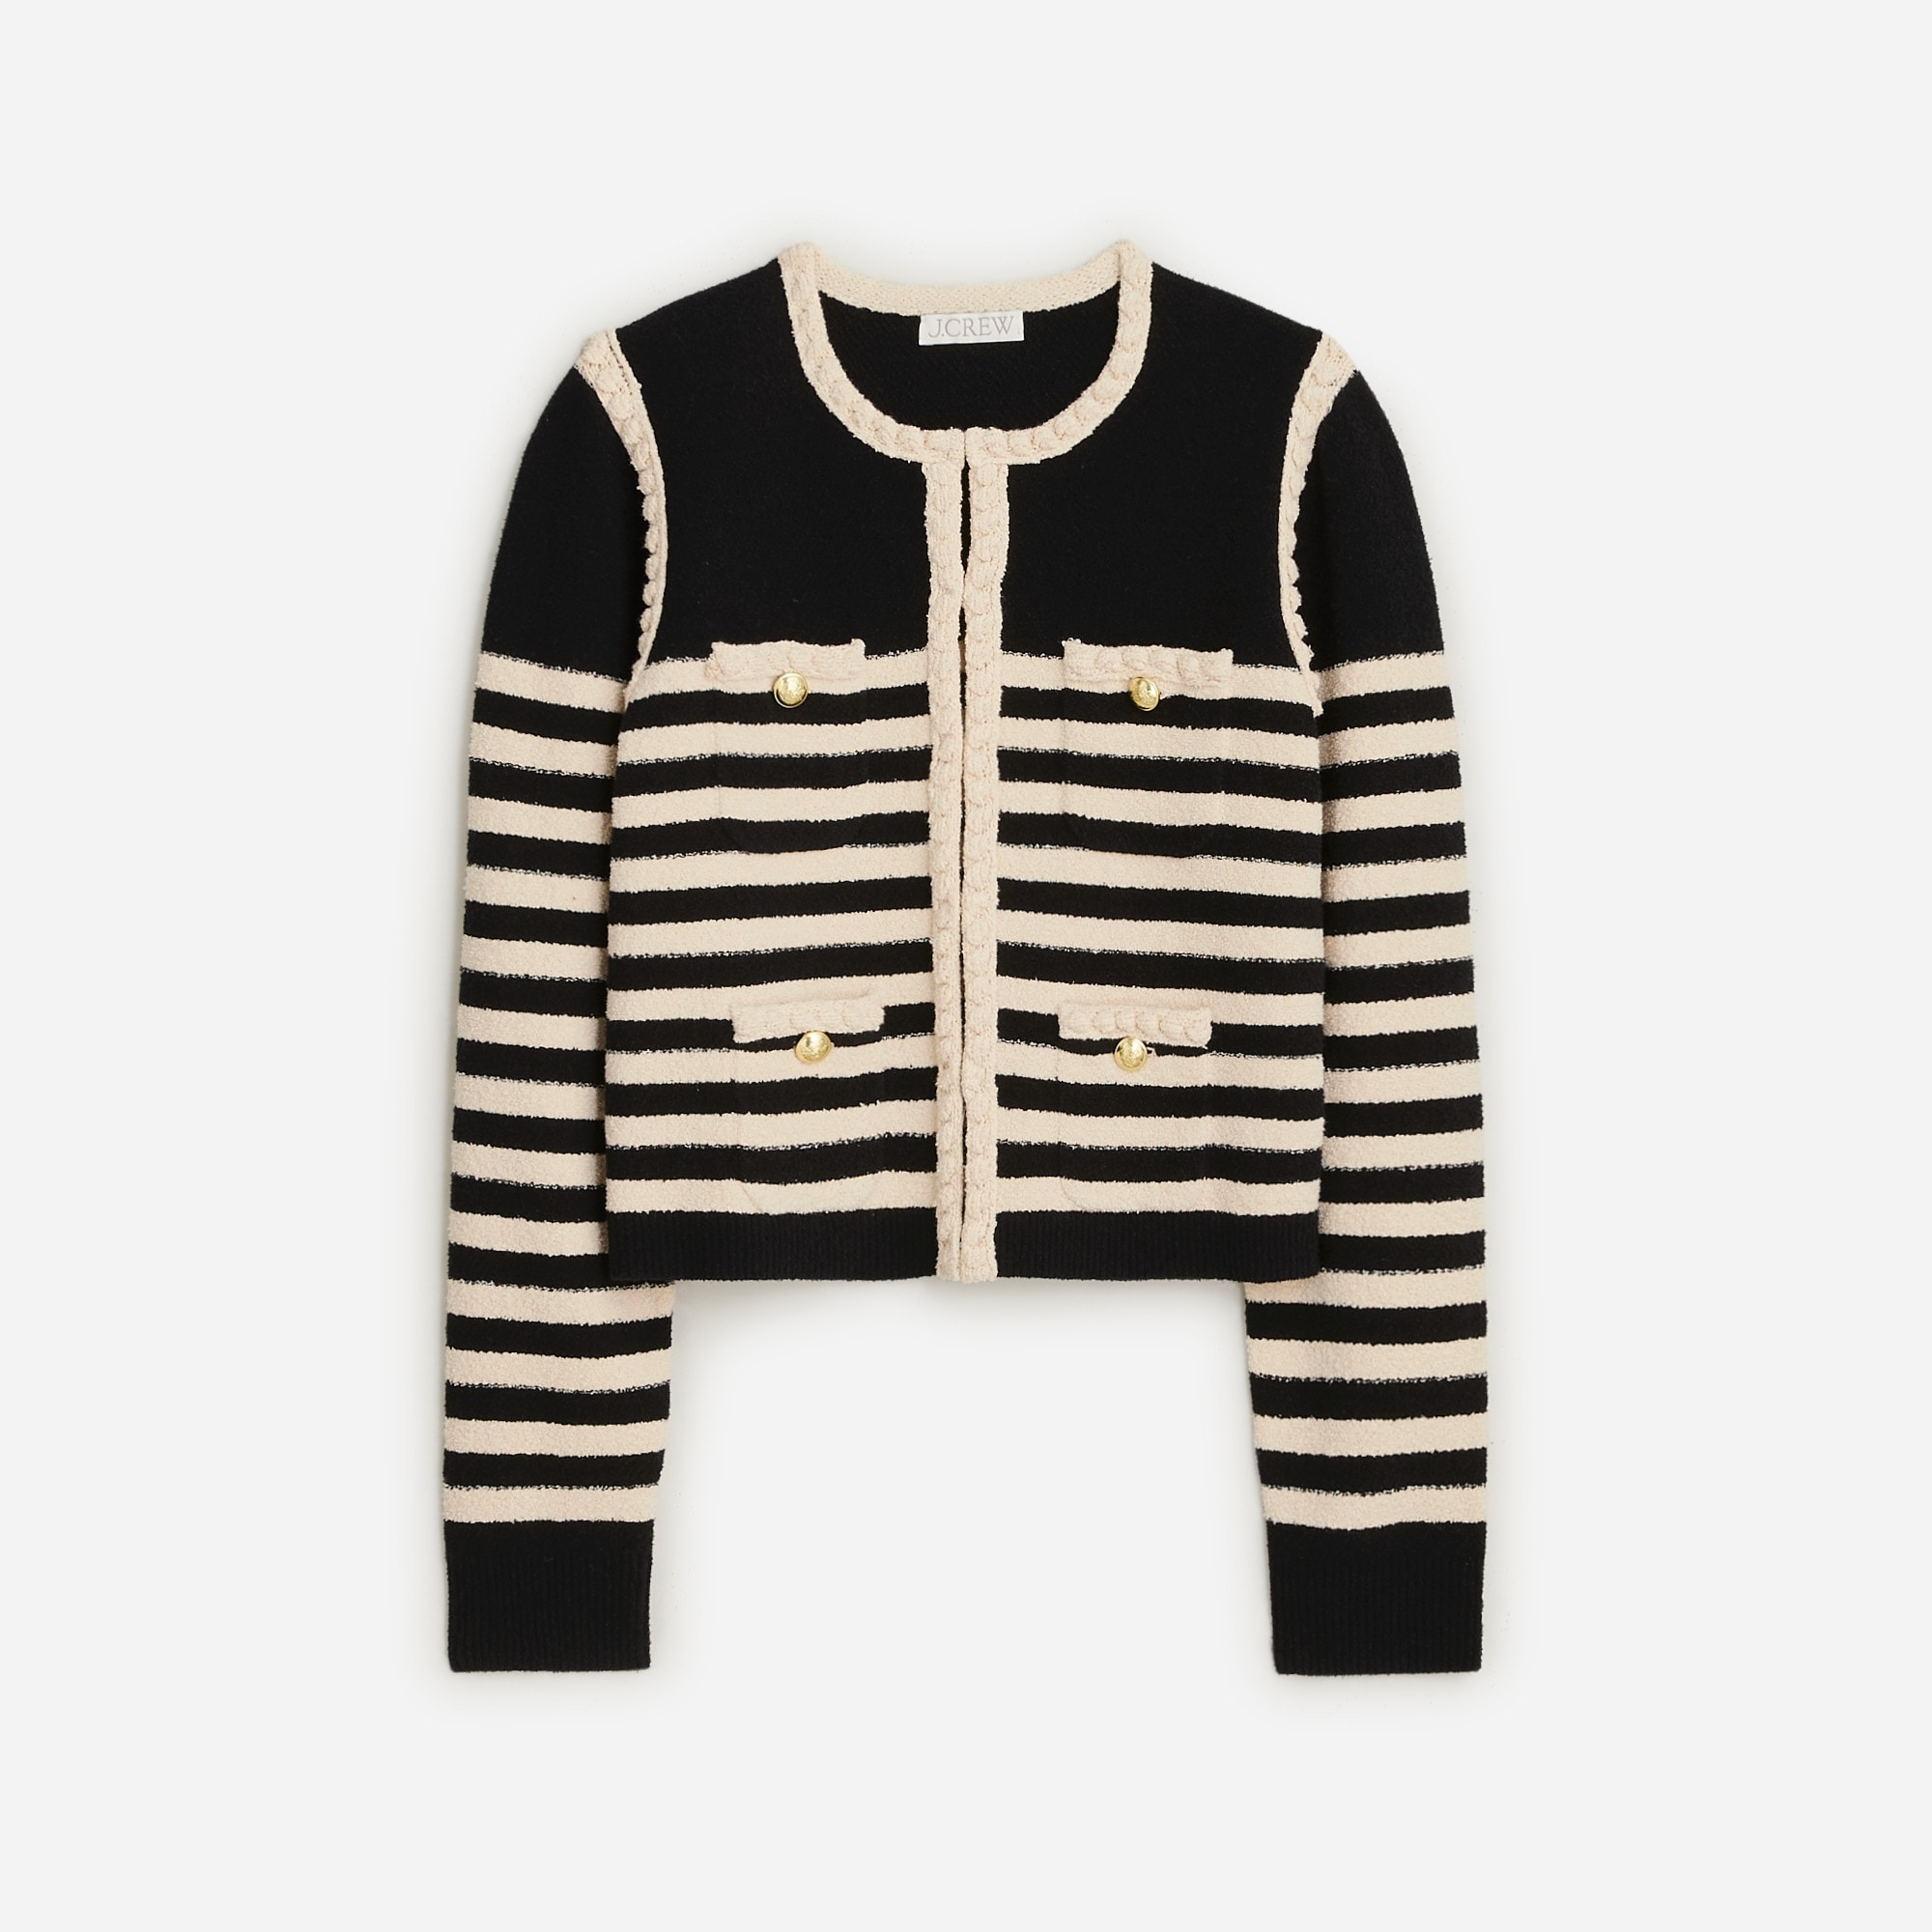  Odette sweater lady jacket in striped boucl&eacute;